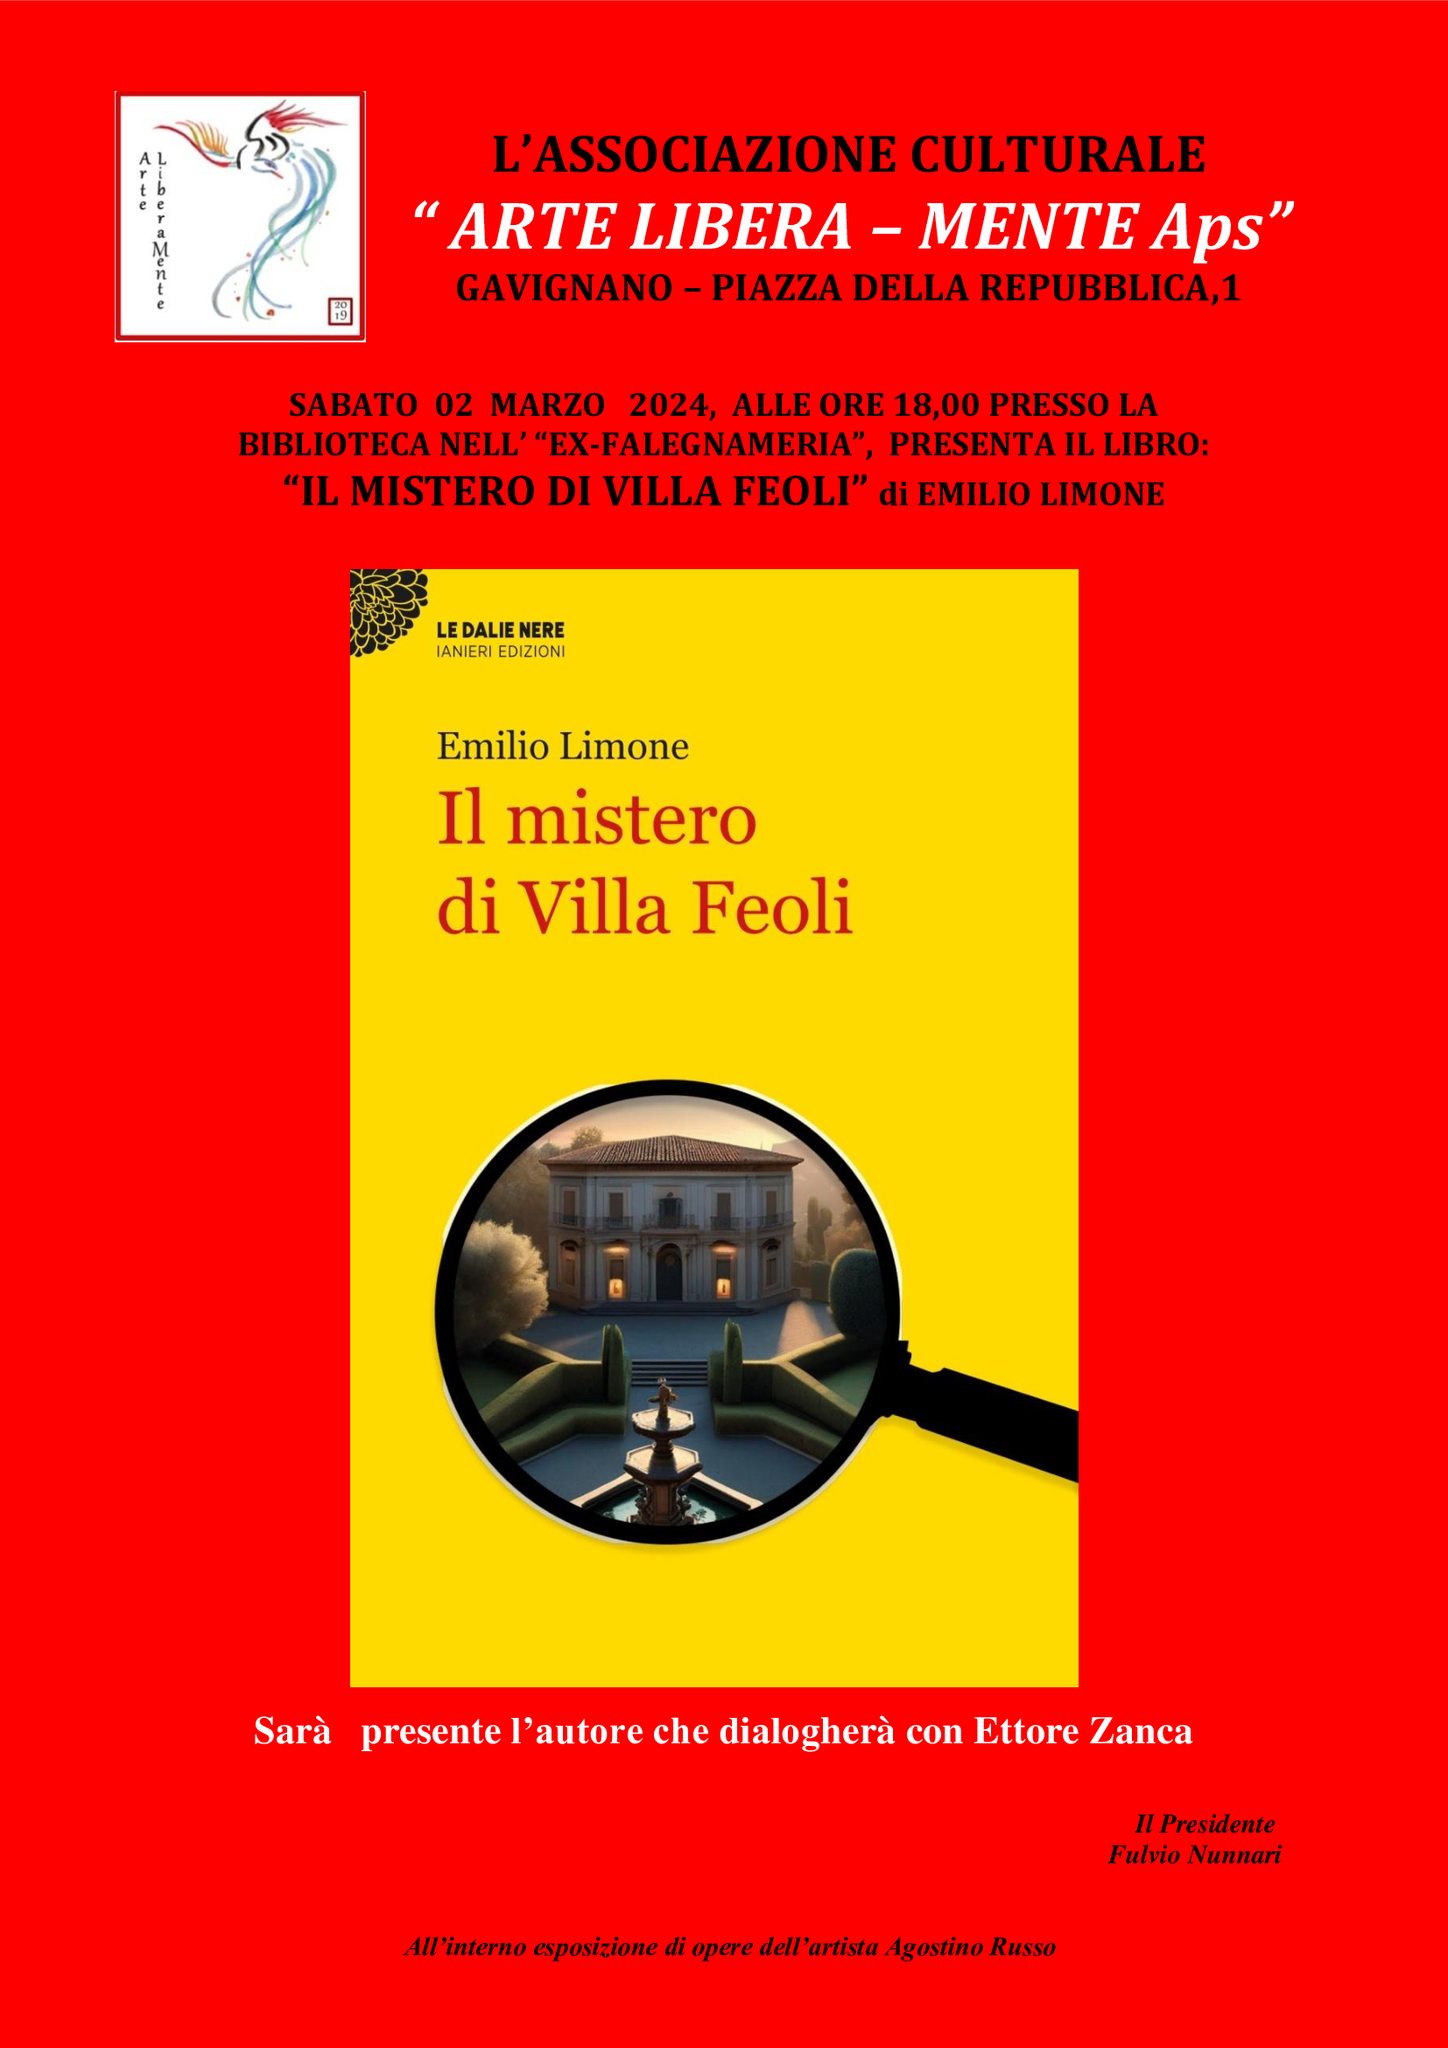 Gavignano, presentazione libro: "Il mistero di Villa Feoli" @ Gavignano